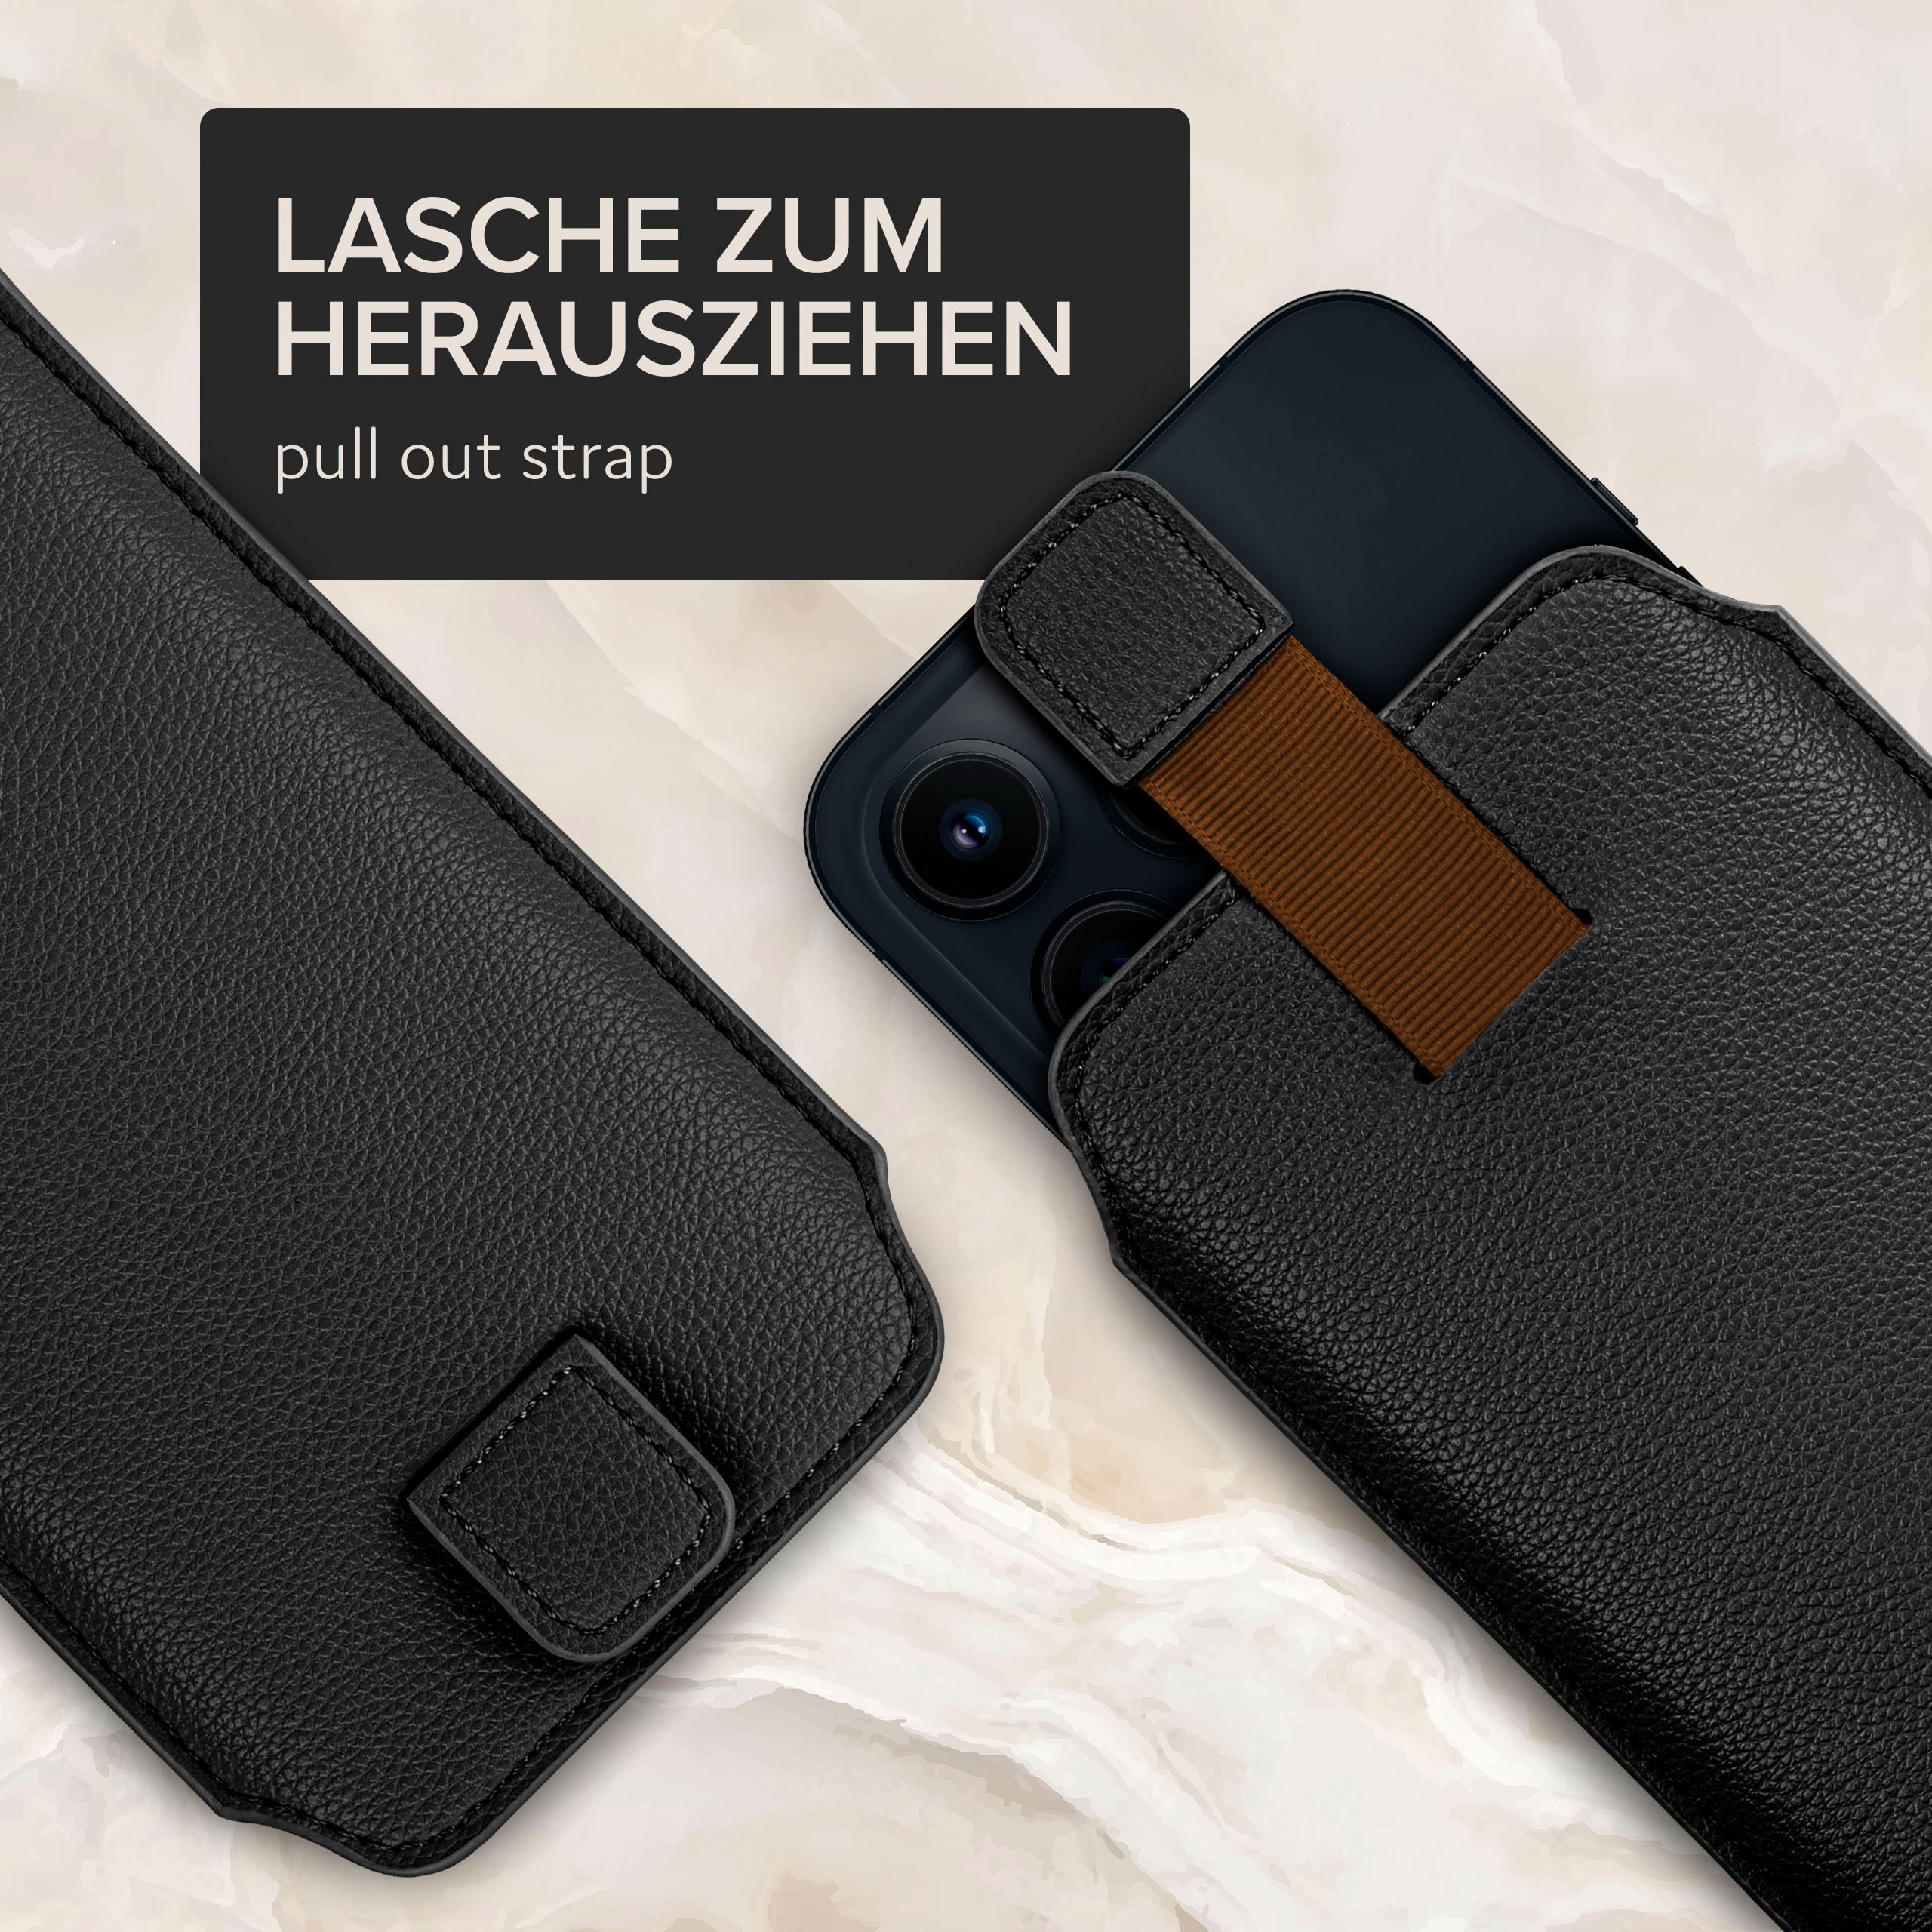 Cover, Einsteckhülle Full Schwarz (2019), Zuglasche, mit ONEFLOW Huawei, Y5